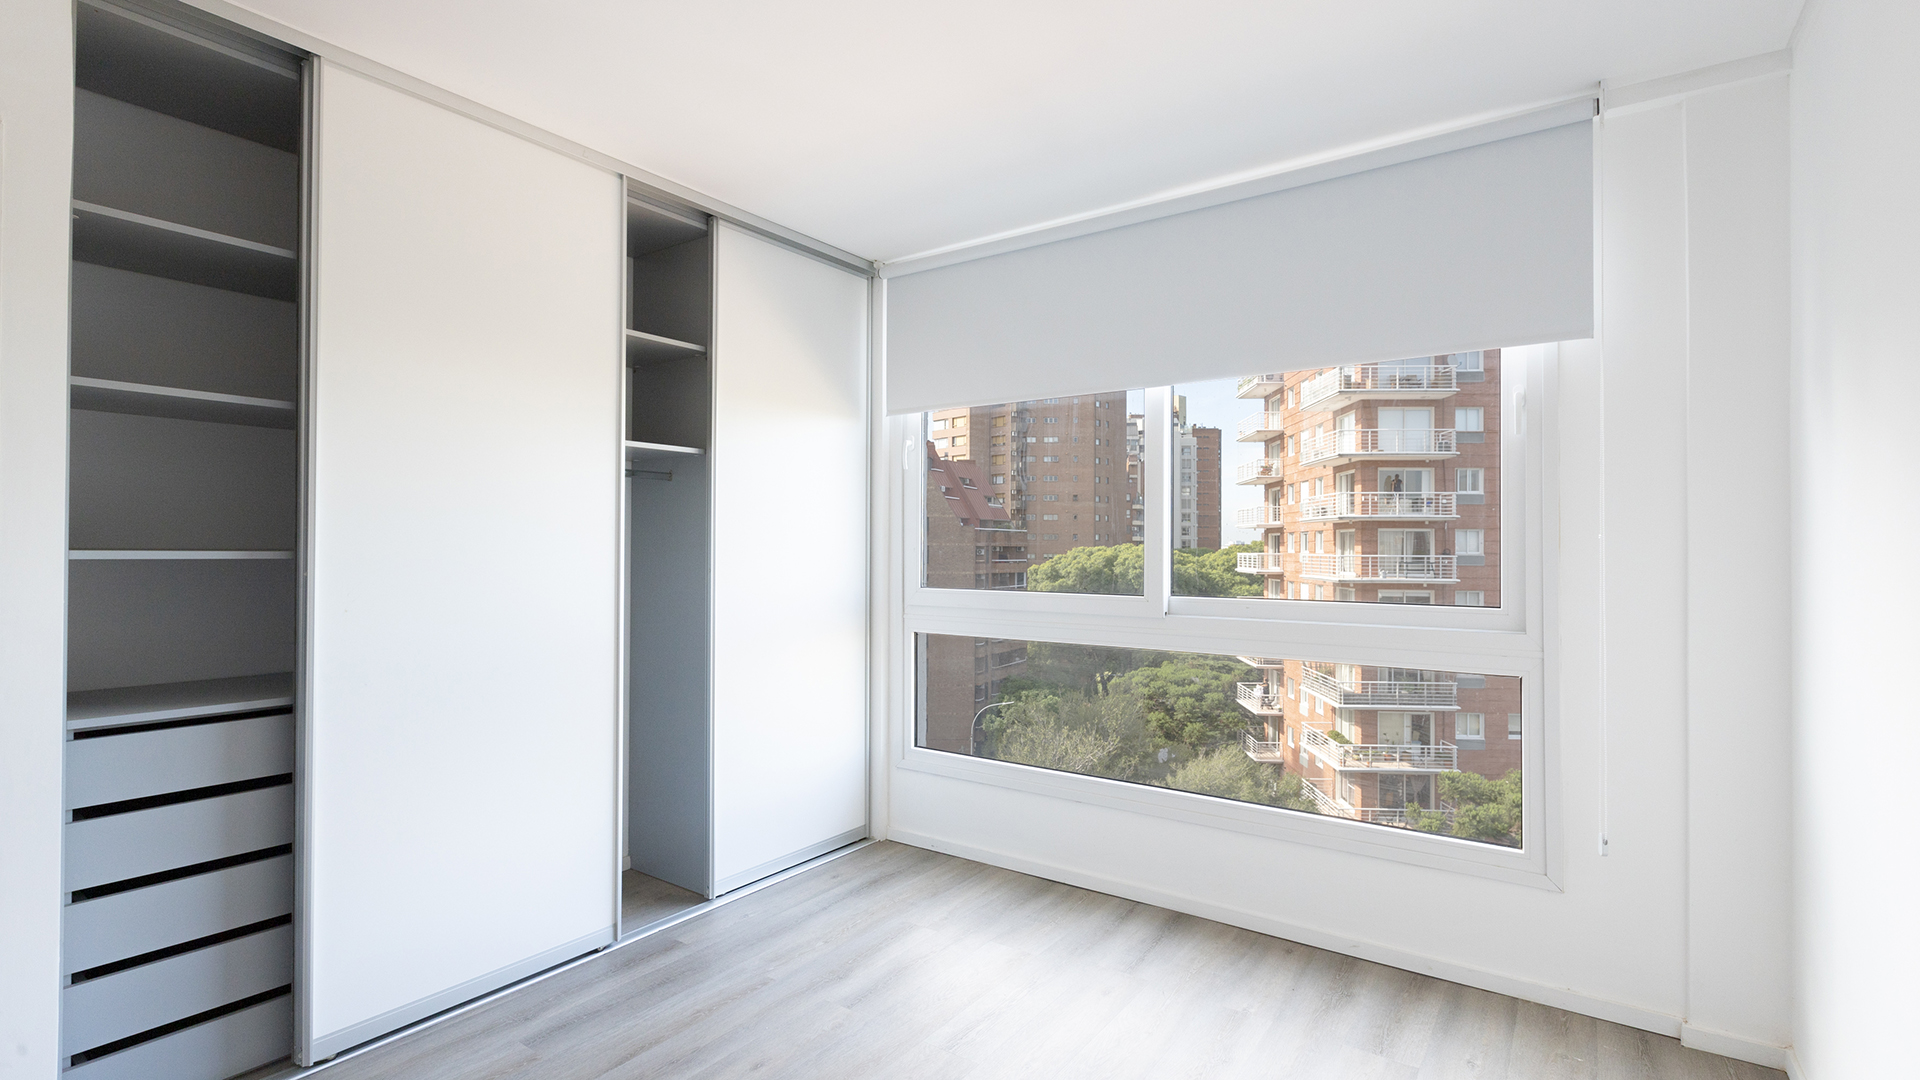 La elección de las ventanas es clave. Además de posibilitar el ingreso de luz y ventilación natural, al elegir las adecuadas, posibilitan obtener espacios más seguros y con la mayor aislación termo acústica posible